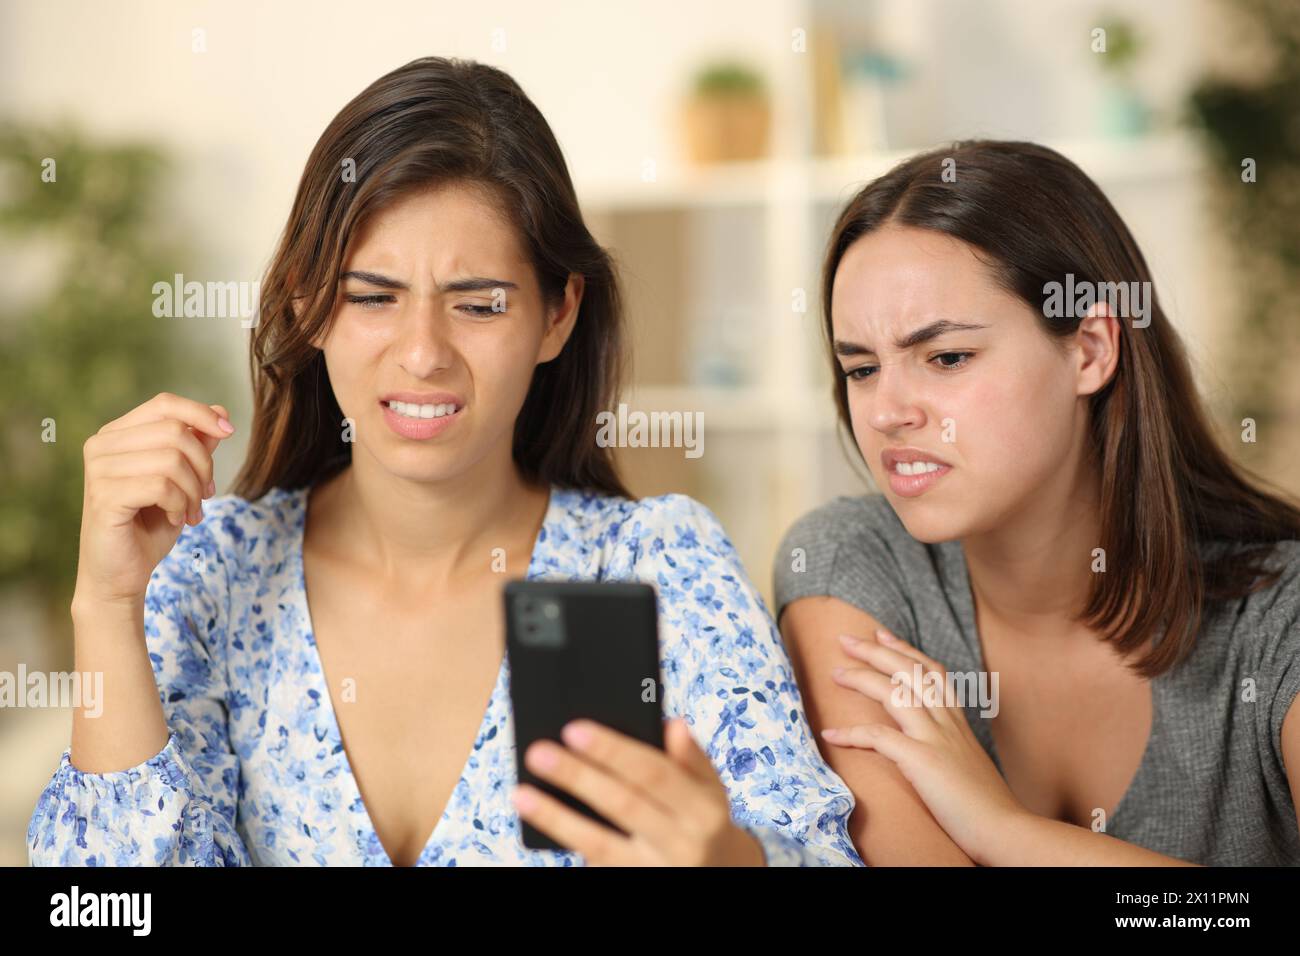 Deux amis regardant du contenu désagréable sur le téléphone à la maison Banque D'Images